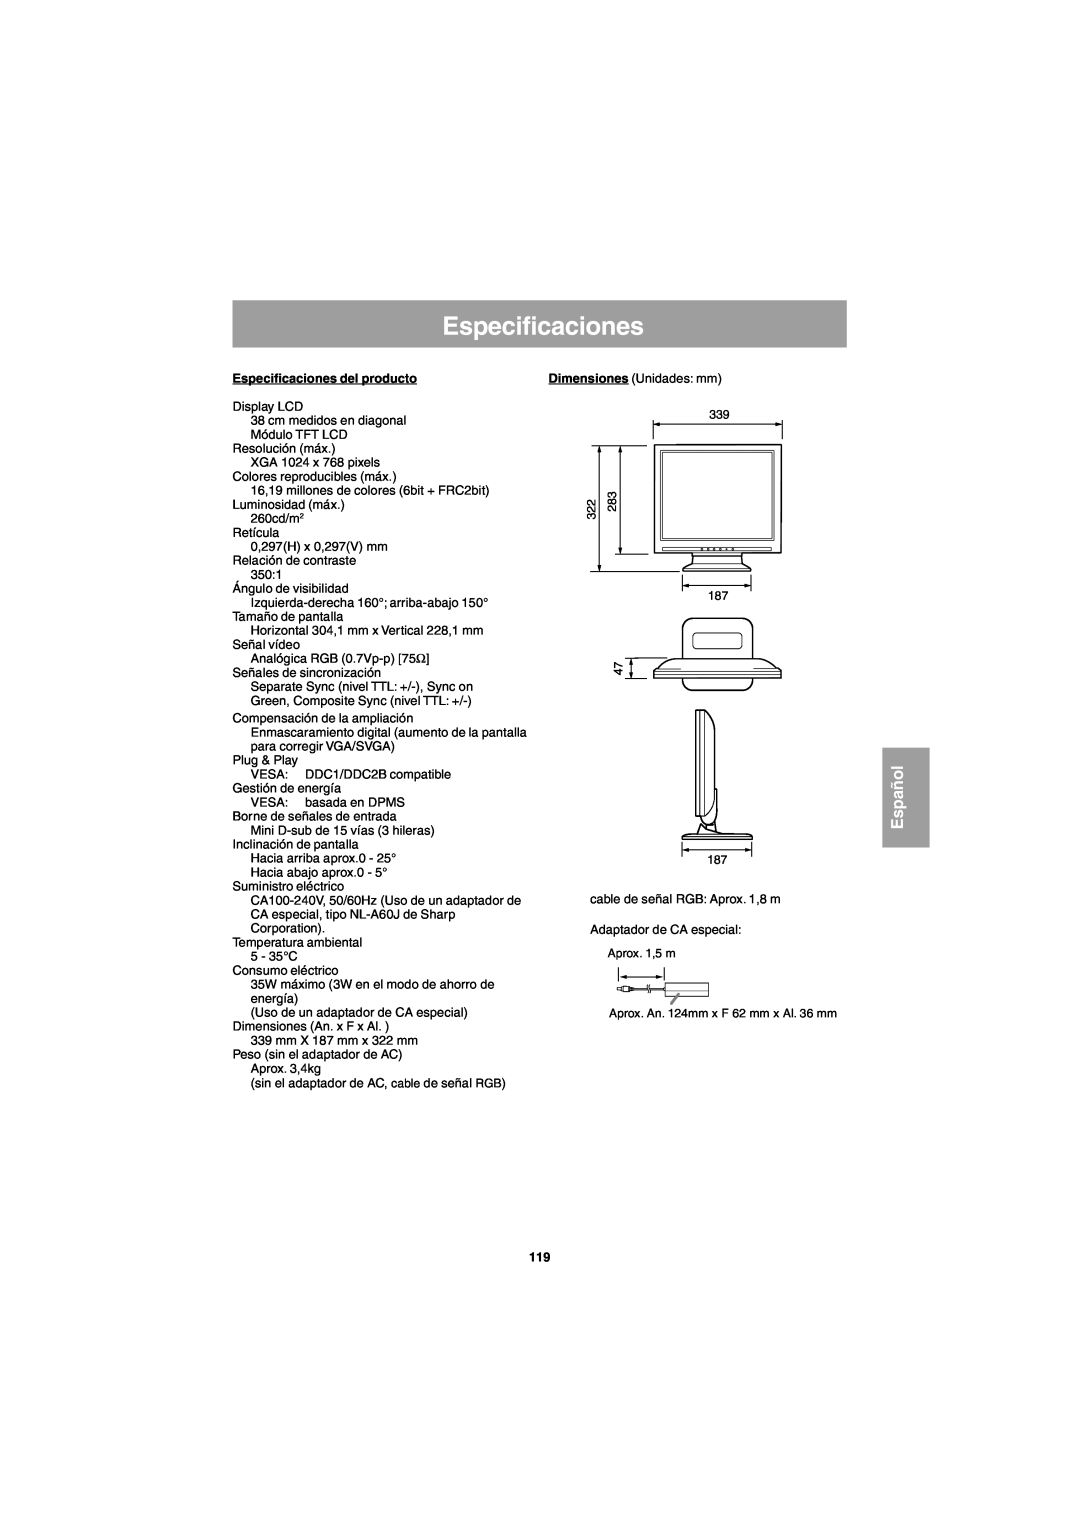 Sharp LL-E15G1, LL-T15G1 operation manual Especificaciones del producto, Español 